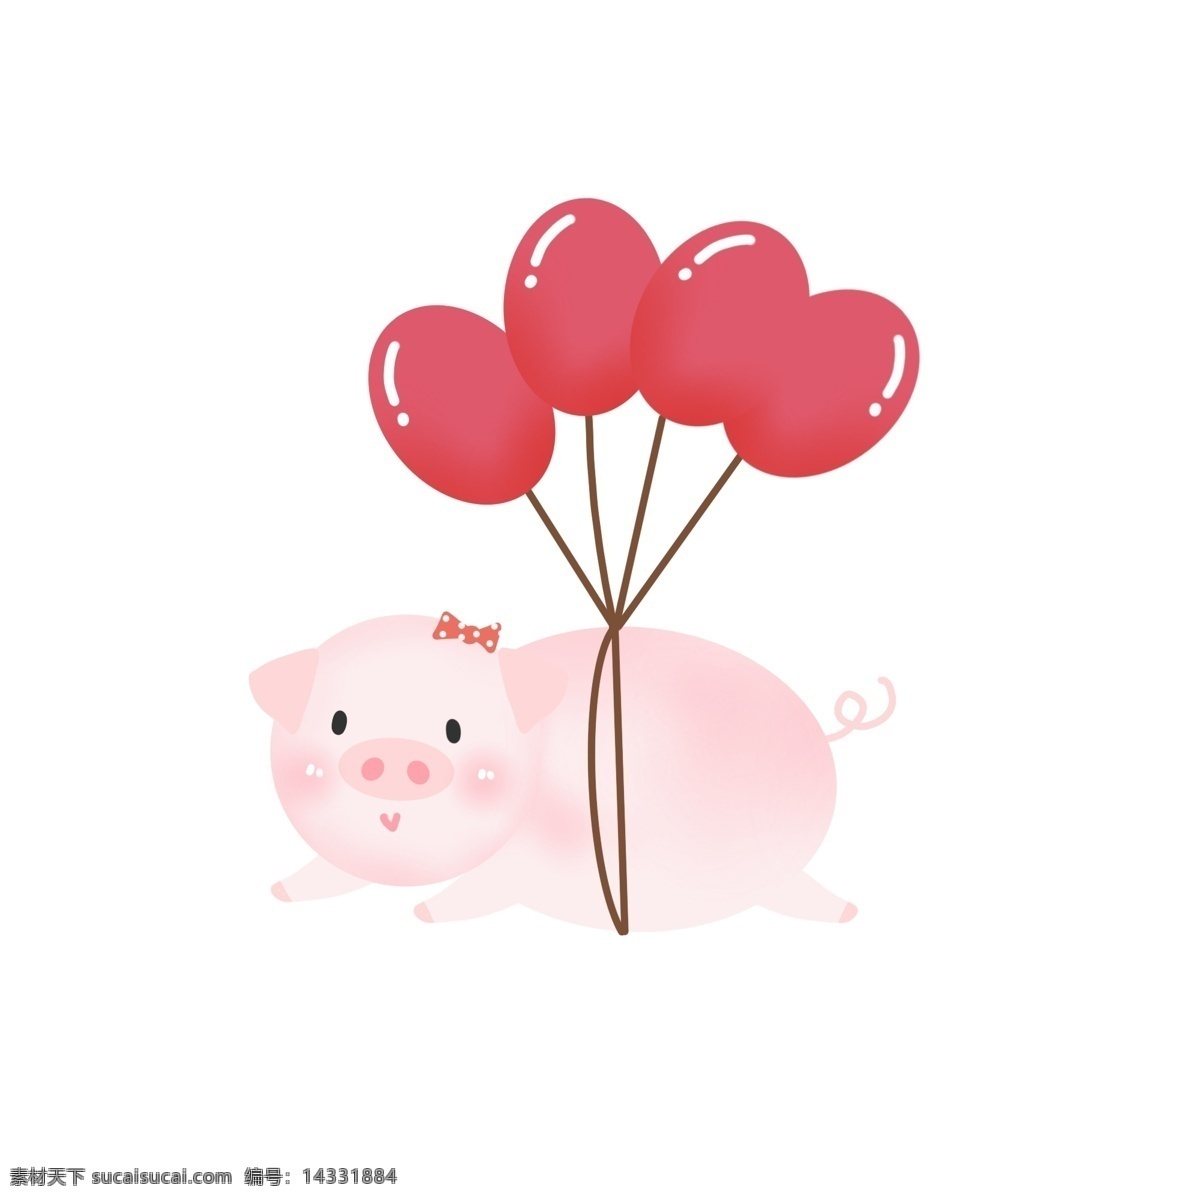 手绘 可爱 气球 猪年 猪 形象 元素 可爱小猪 小猪形象 手绘小猪 飞天小猪 猪年小猪